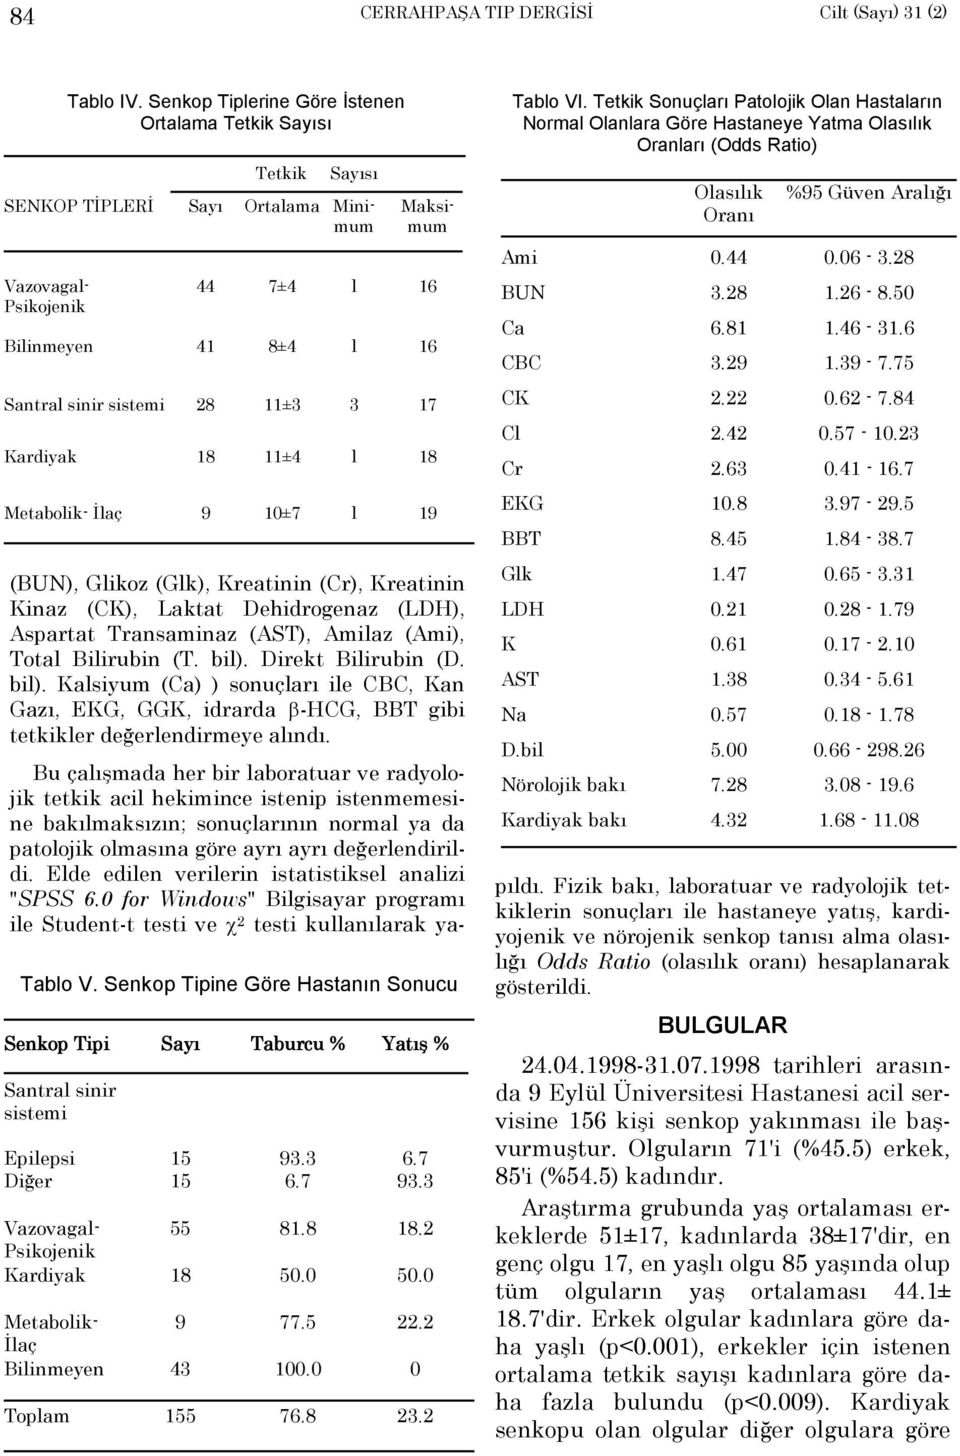 Senkop Tipine Göre Hastanõn Sonucu Senkop Tipi Santral sinir sistemi Epilepsi Diğer Sayõ Taburcu % 15 15 93.3 6.7 Yatõş % 6.7 93.3 SENKOP TİPLERİ Sayõ Ortalama Minimum Vazovagal- 55 81.8 18.